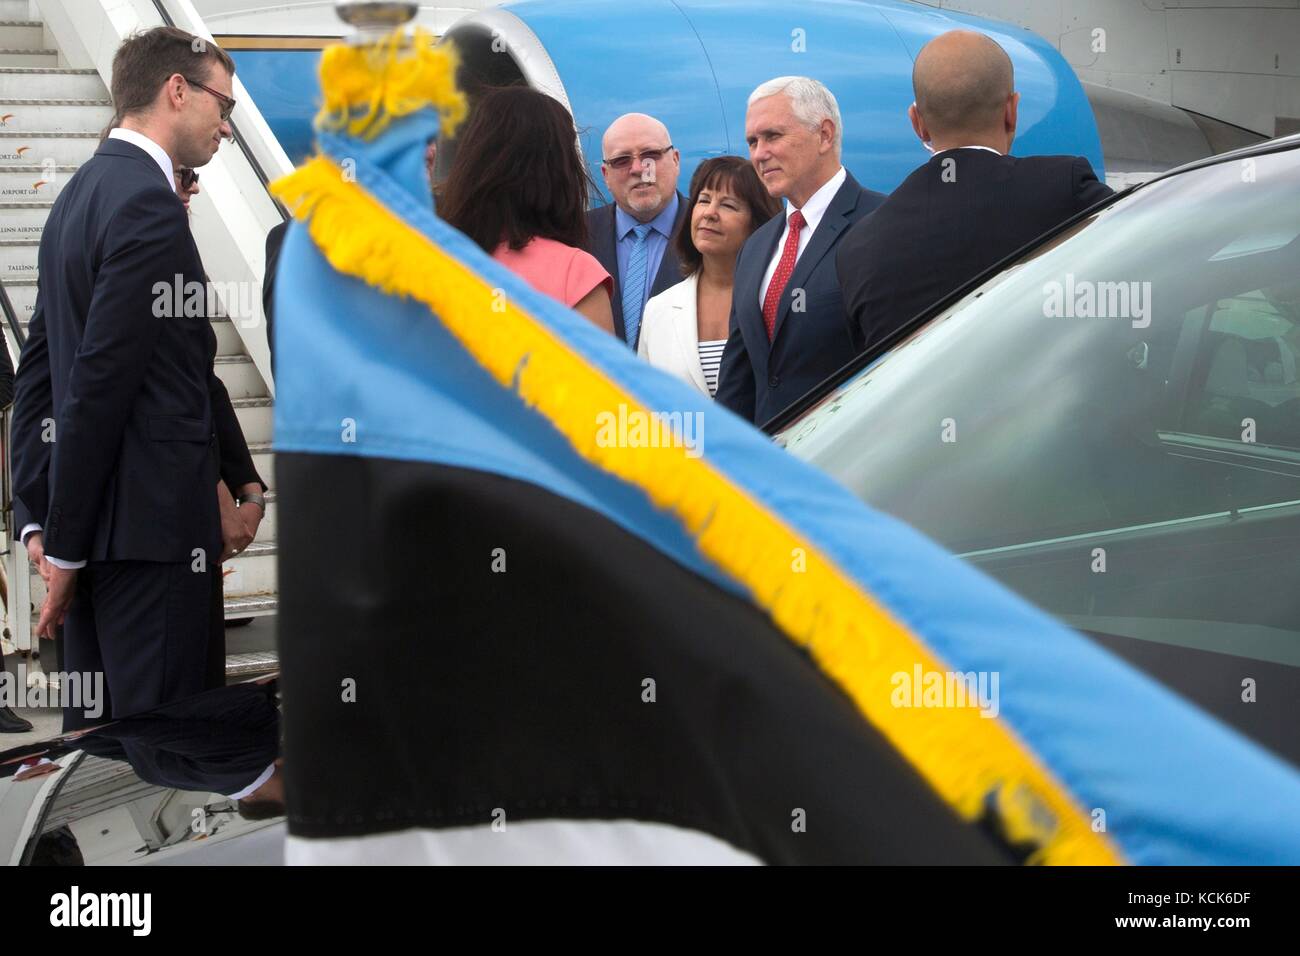 Le vice-président américain Mike pence et deuxième dame karen pence arrivent à l'aéroport de Tallinn le 30 juillet 2017 à Tallinn, Estonie. (Photo de d. Myles cullen via planetpix) Banque D'Images